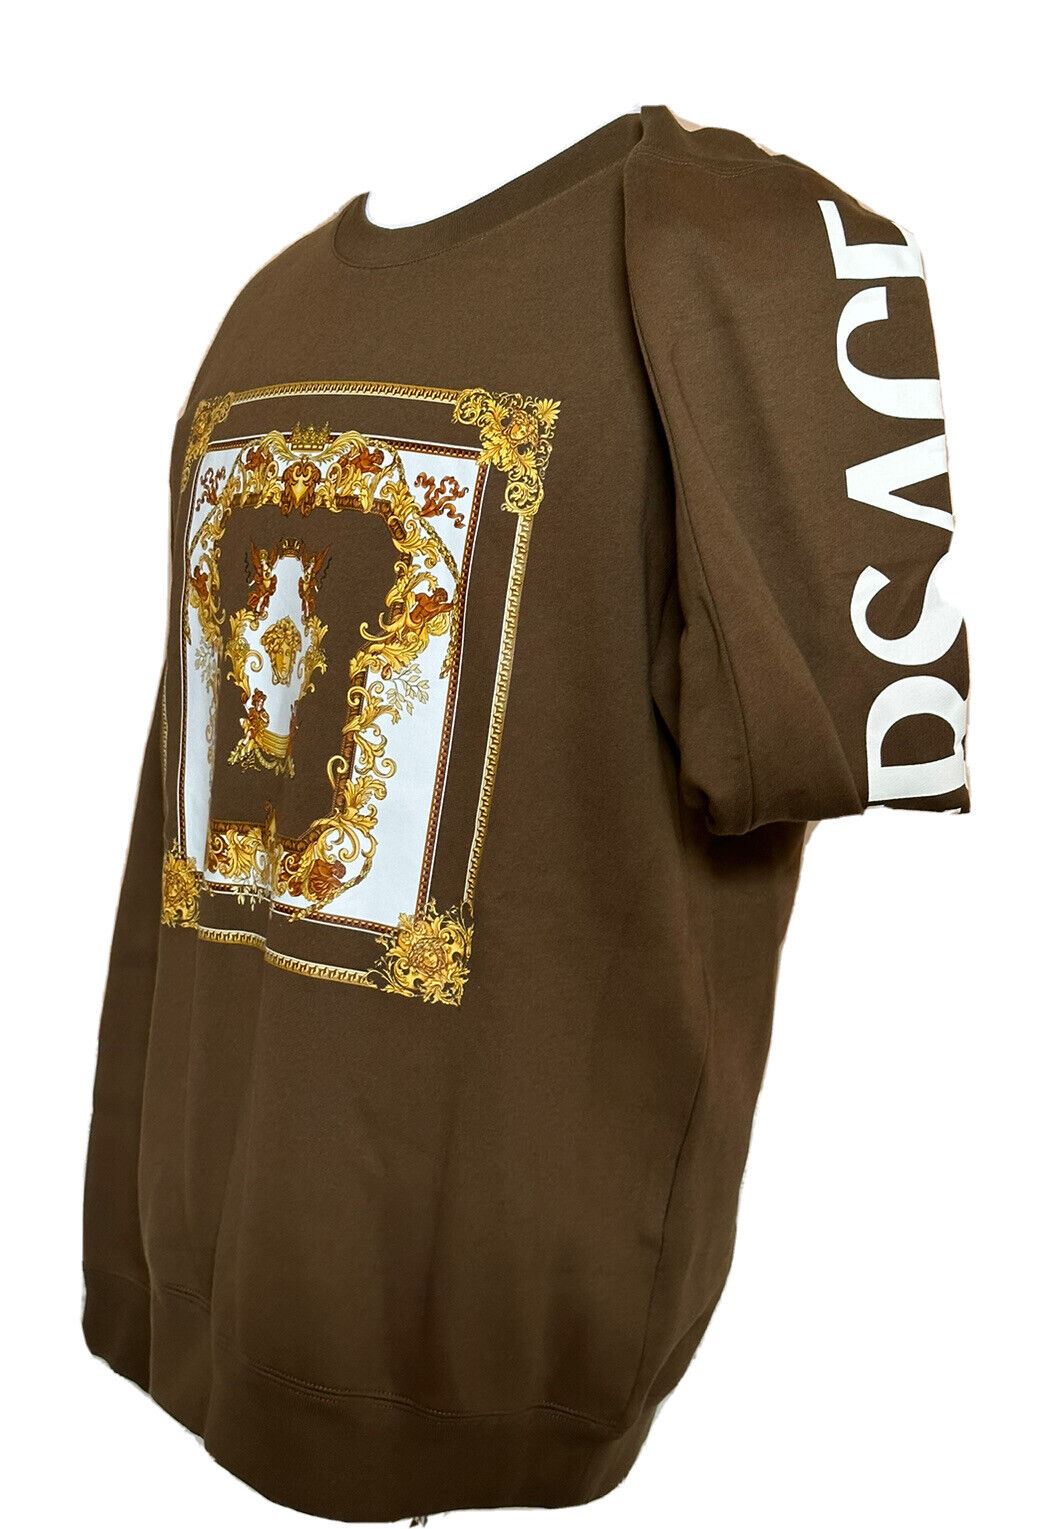 NWT $850 Versace Medusa Renaissance Khaki Cotton Sweatshirt 3XL 1008282